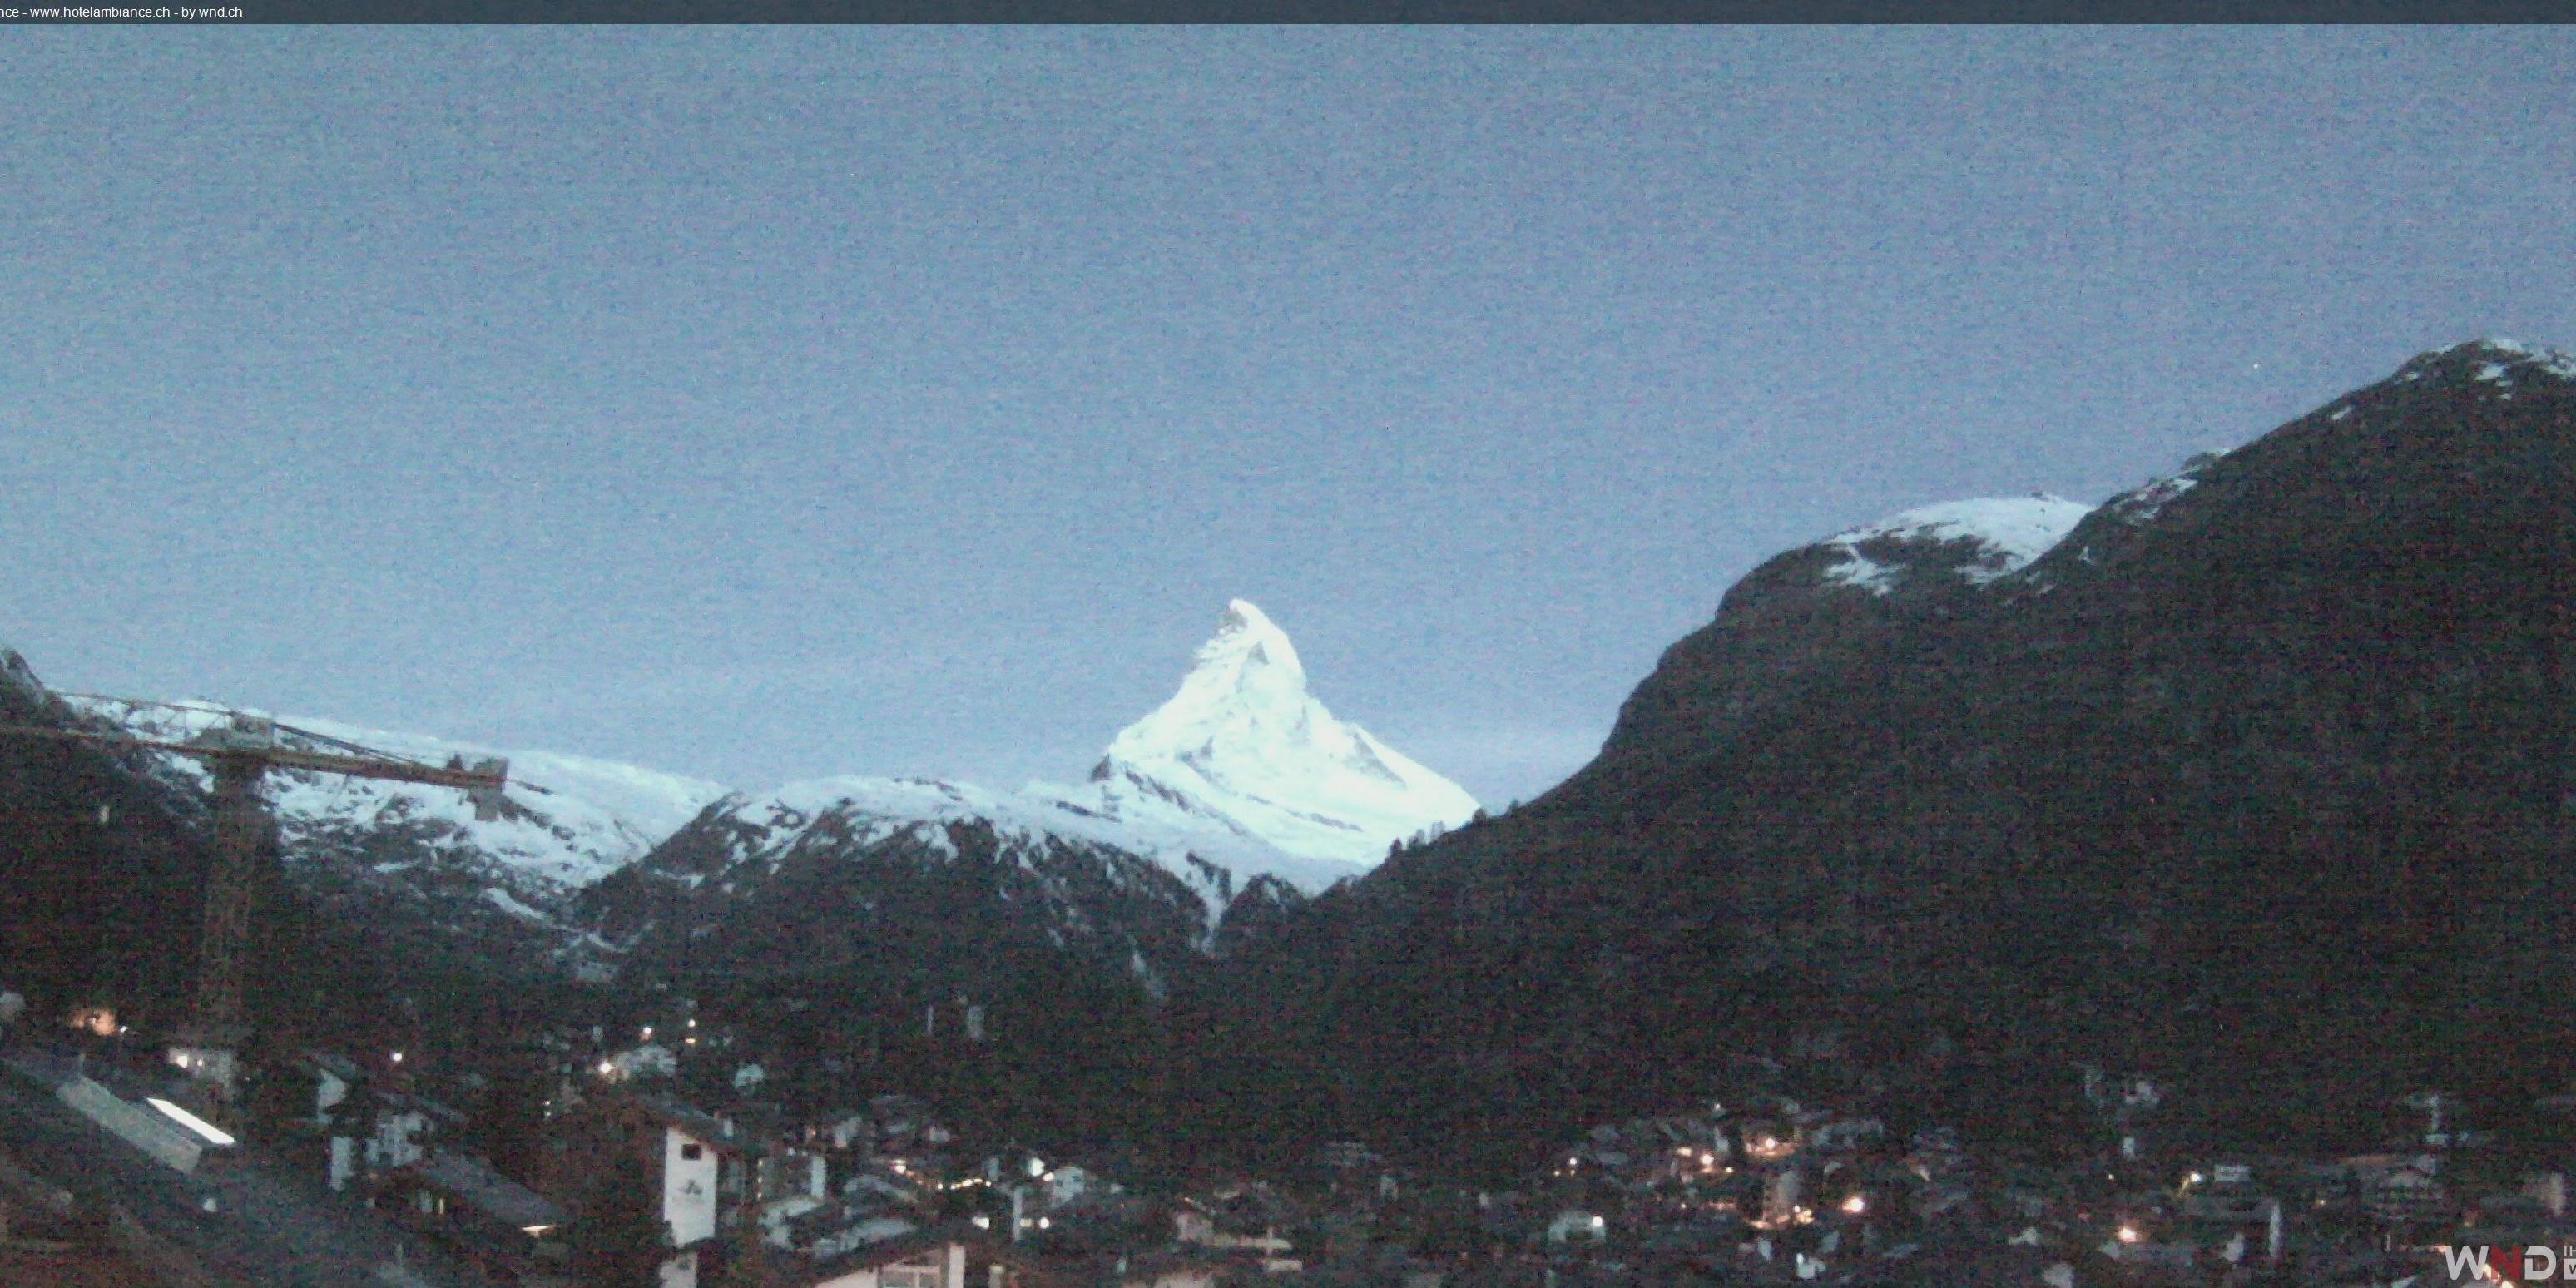 Zermatt Dom. 05:18